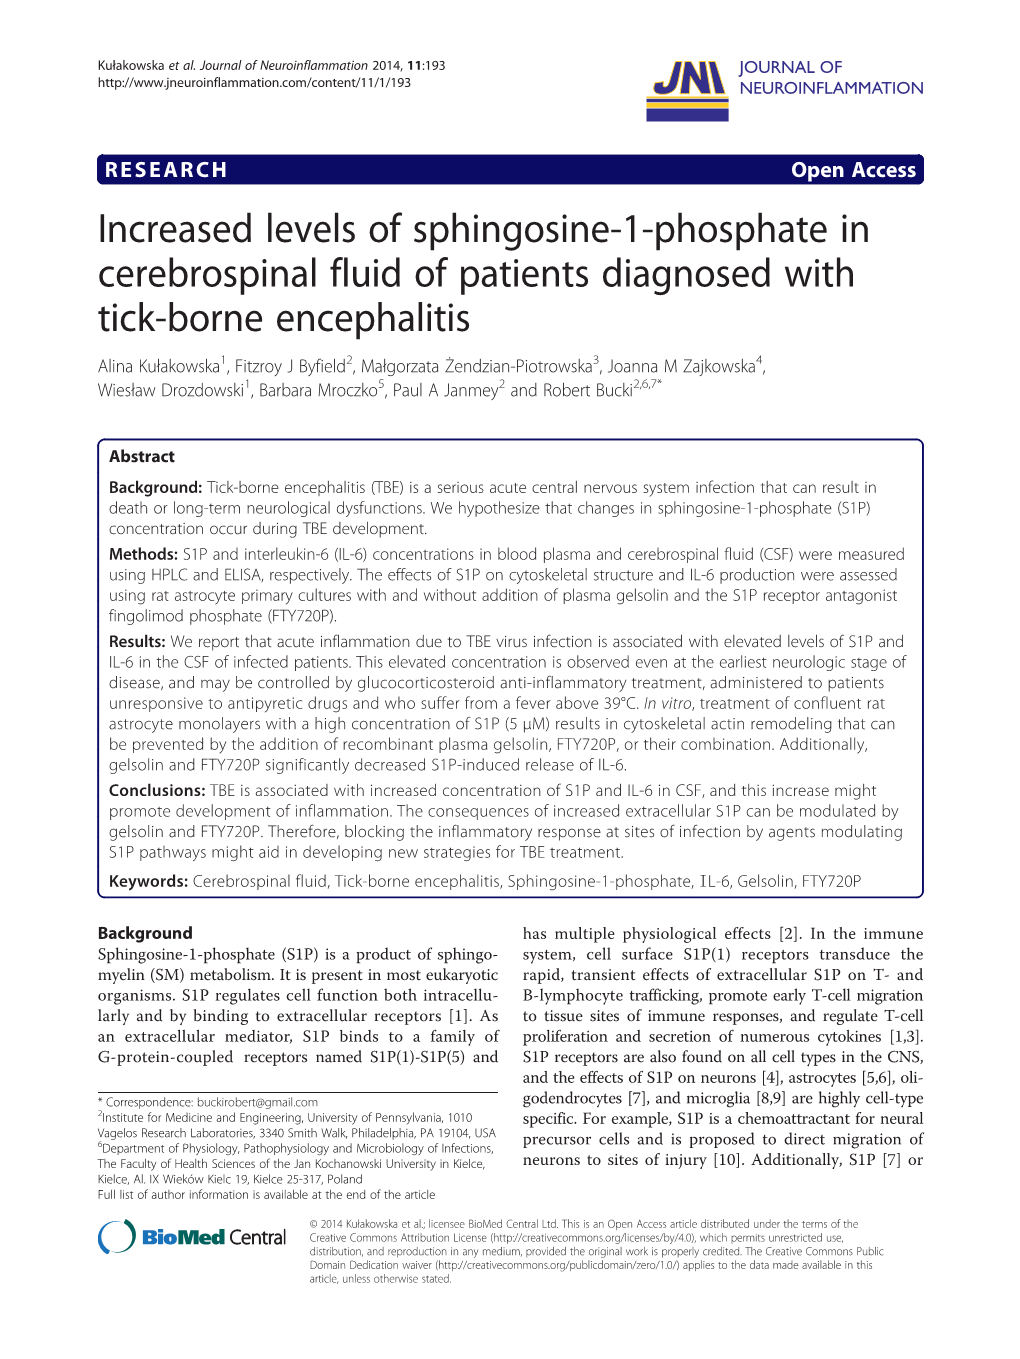 Increased Levels of Sphingosine-1-Phosphate In